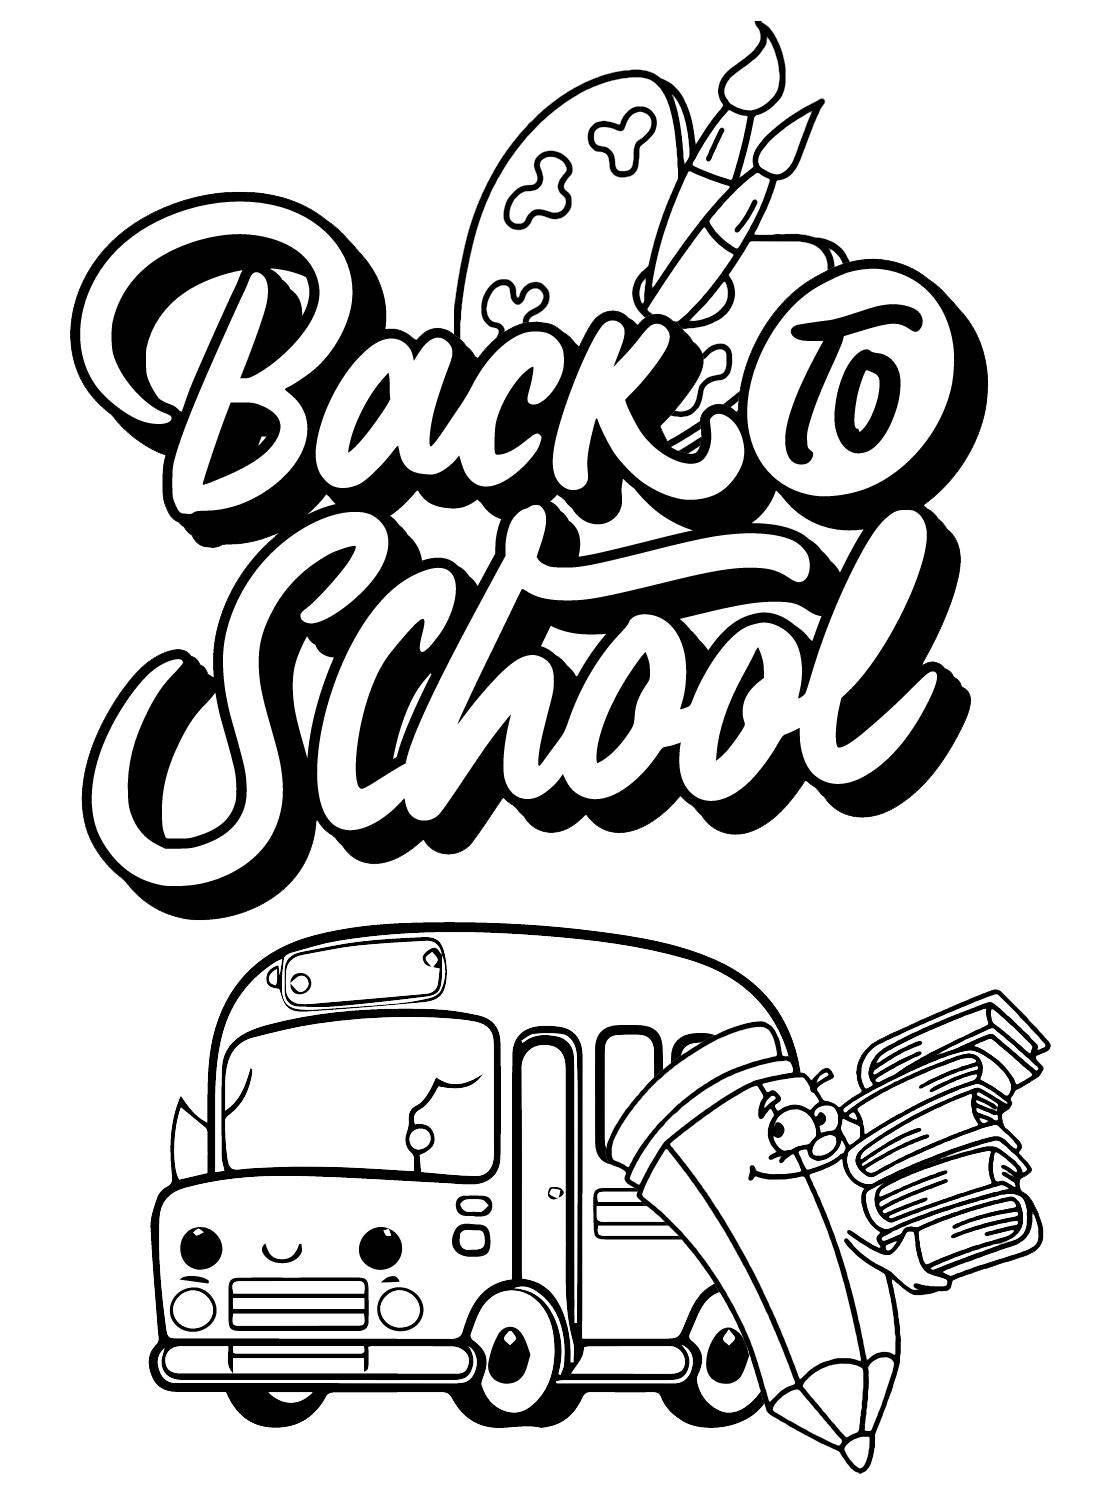 Página para colorear de regreso a clases para imprimir gratis de Regreso a la escuela